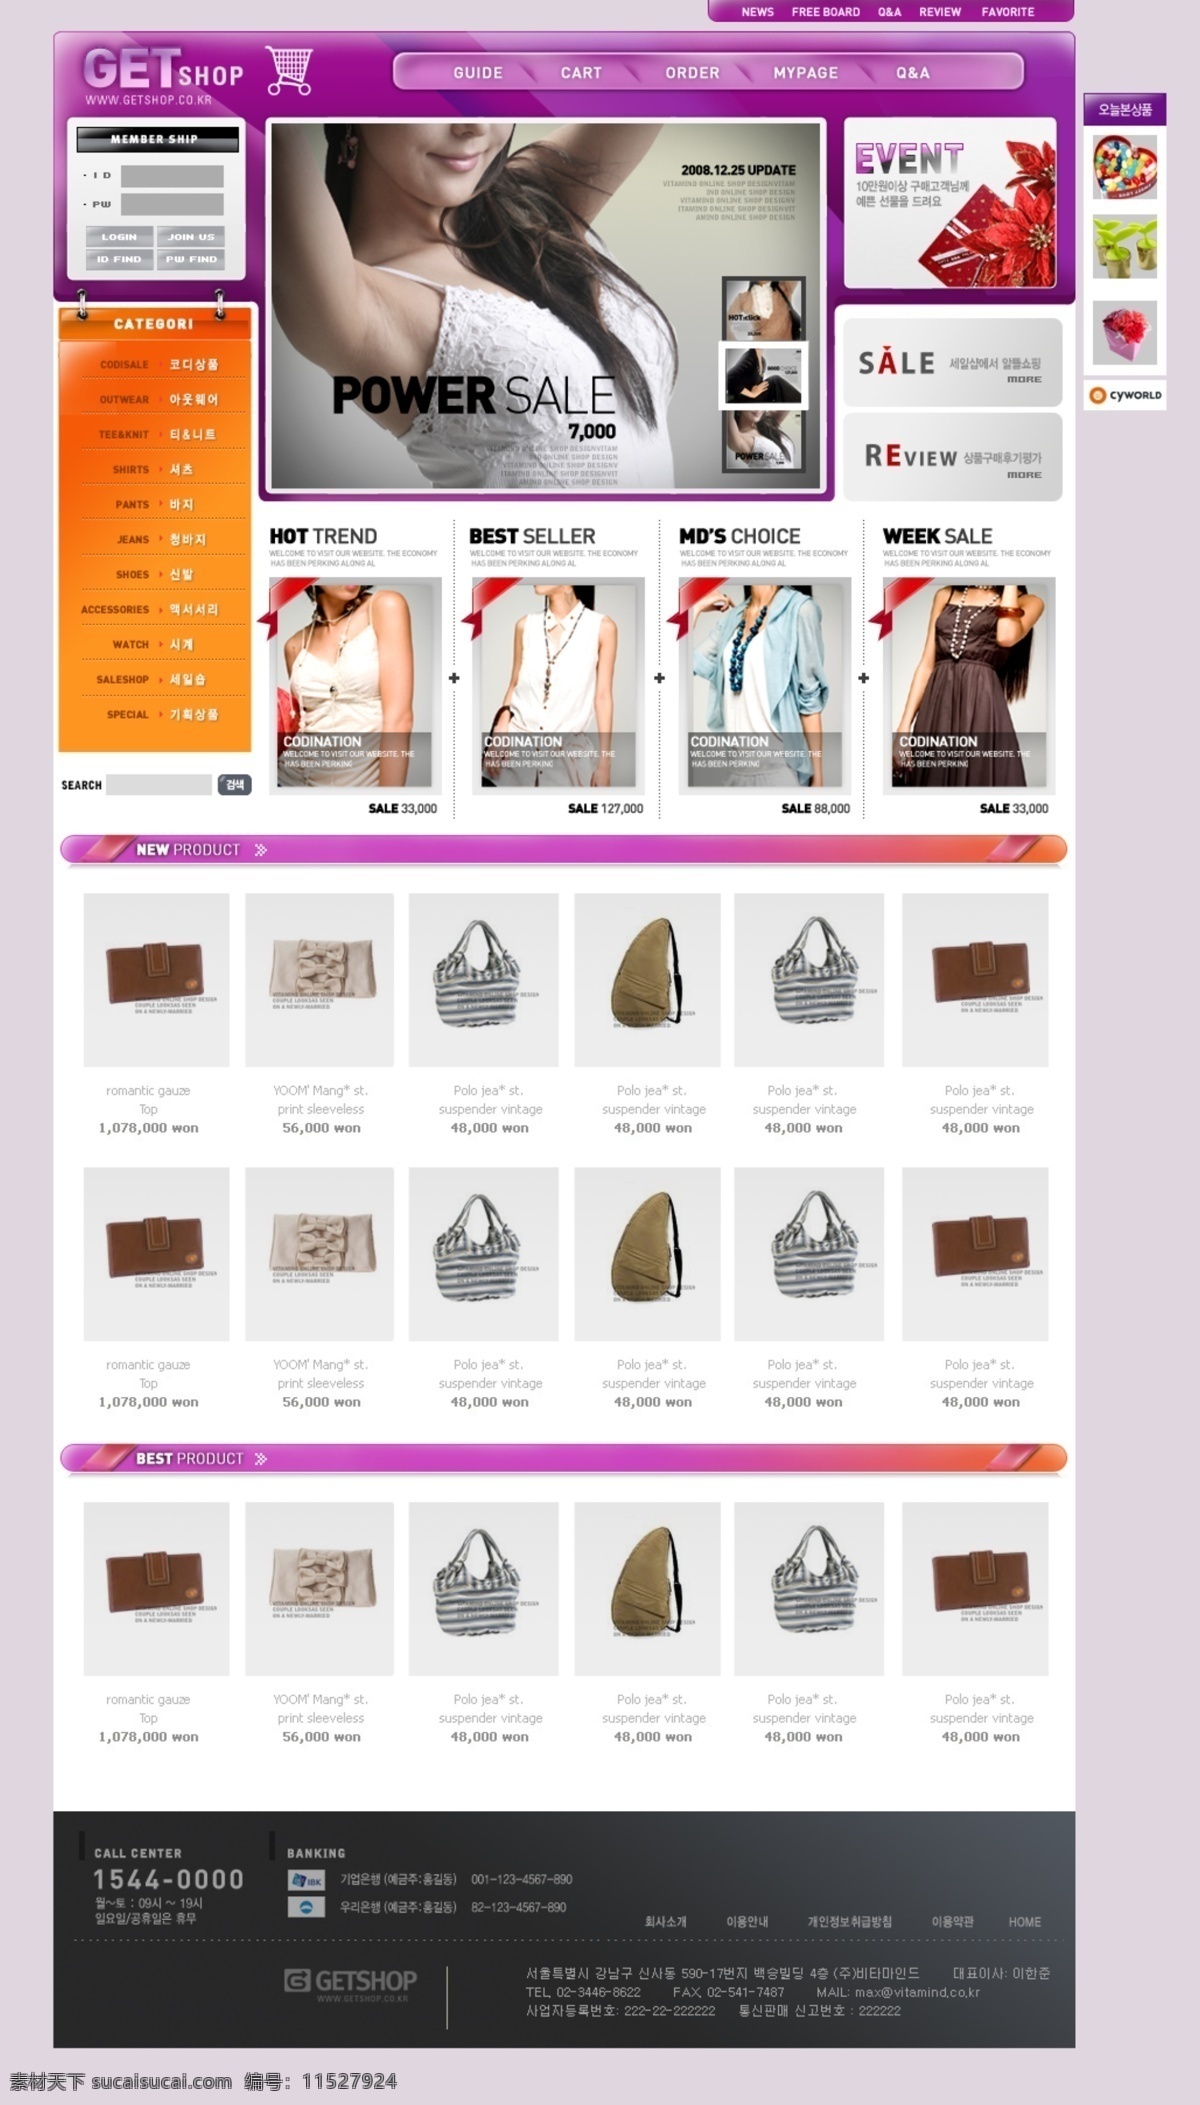 shopmain 紫色商城首页 紫色商城 首页 网页设计 网站首页 电商模板 淘宝模板